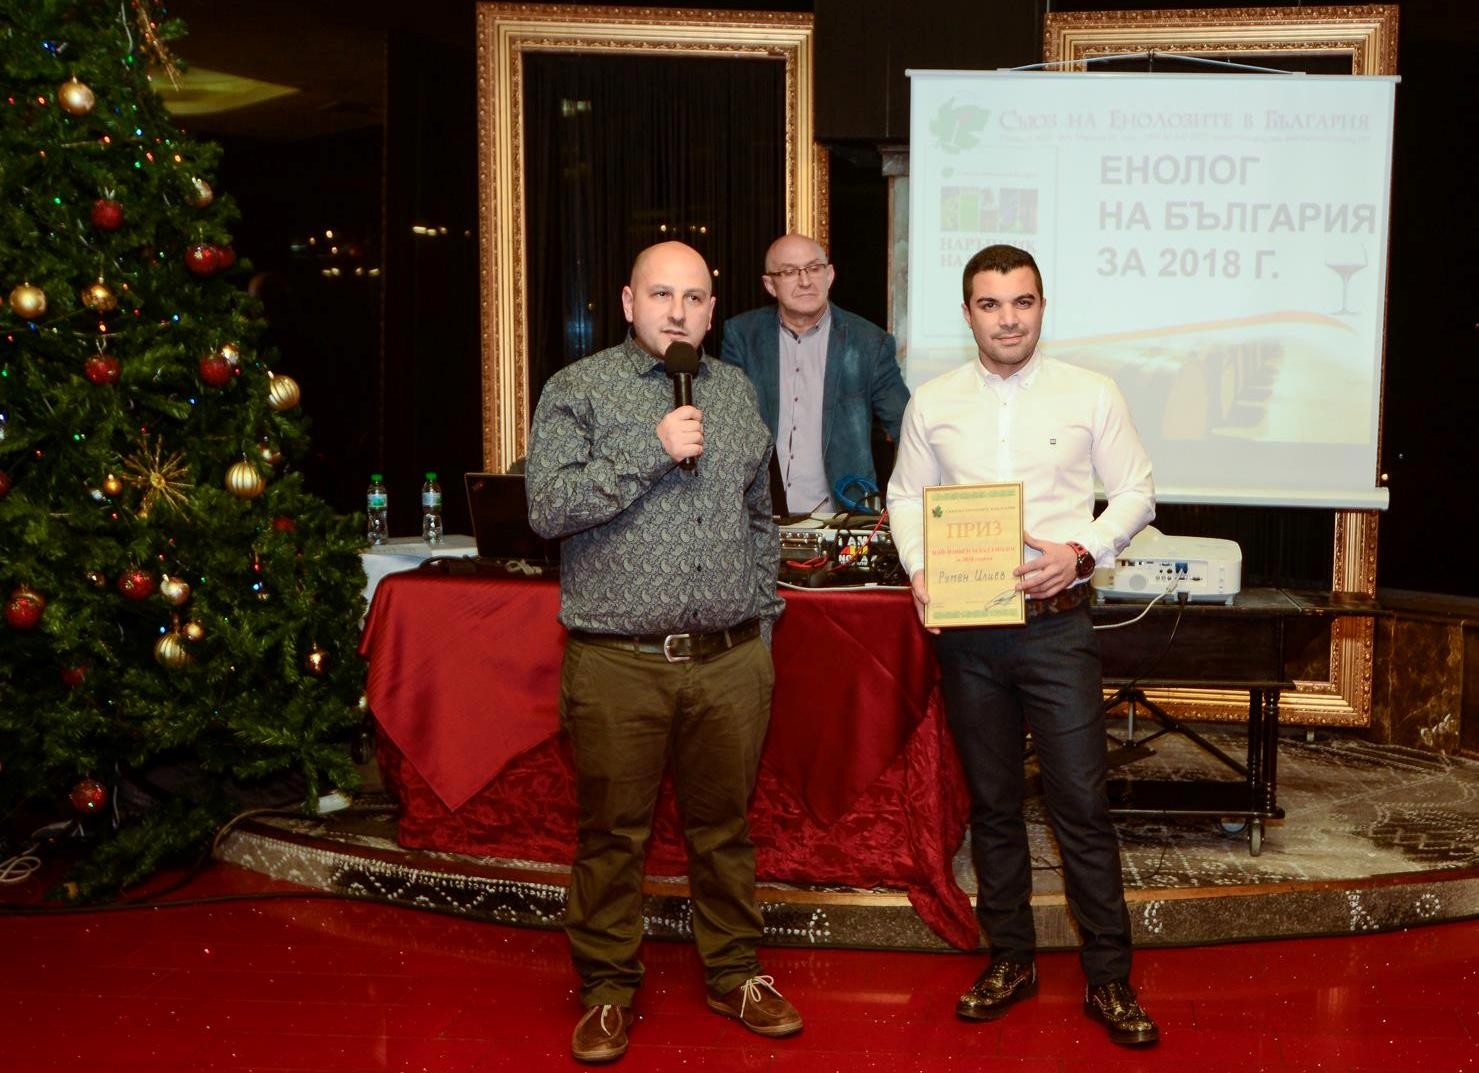 Румен Илиев от Винарска къща „Левент“ стана млад енолог на 2018 г.